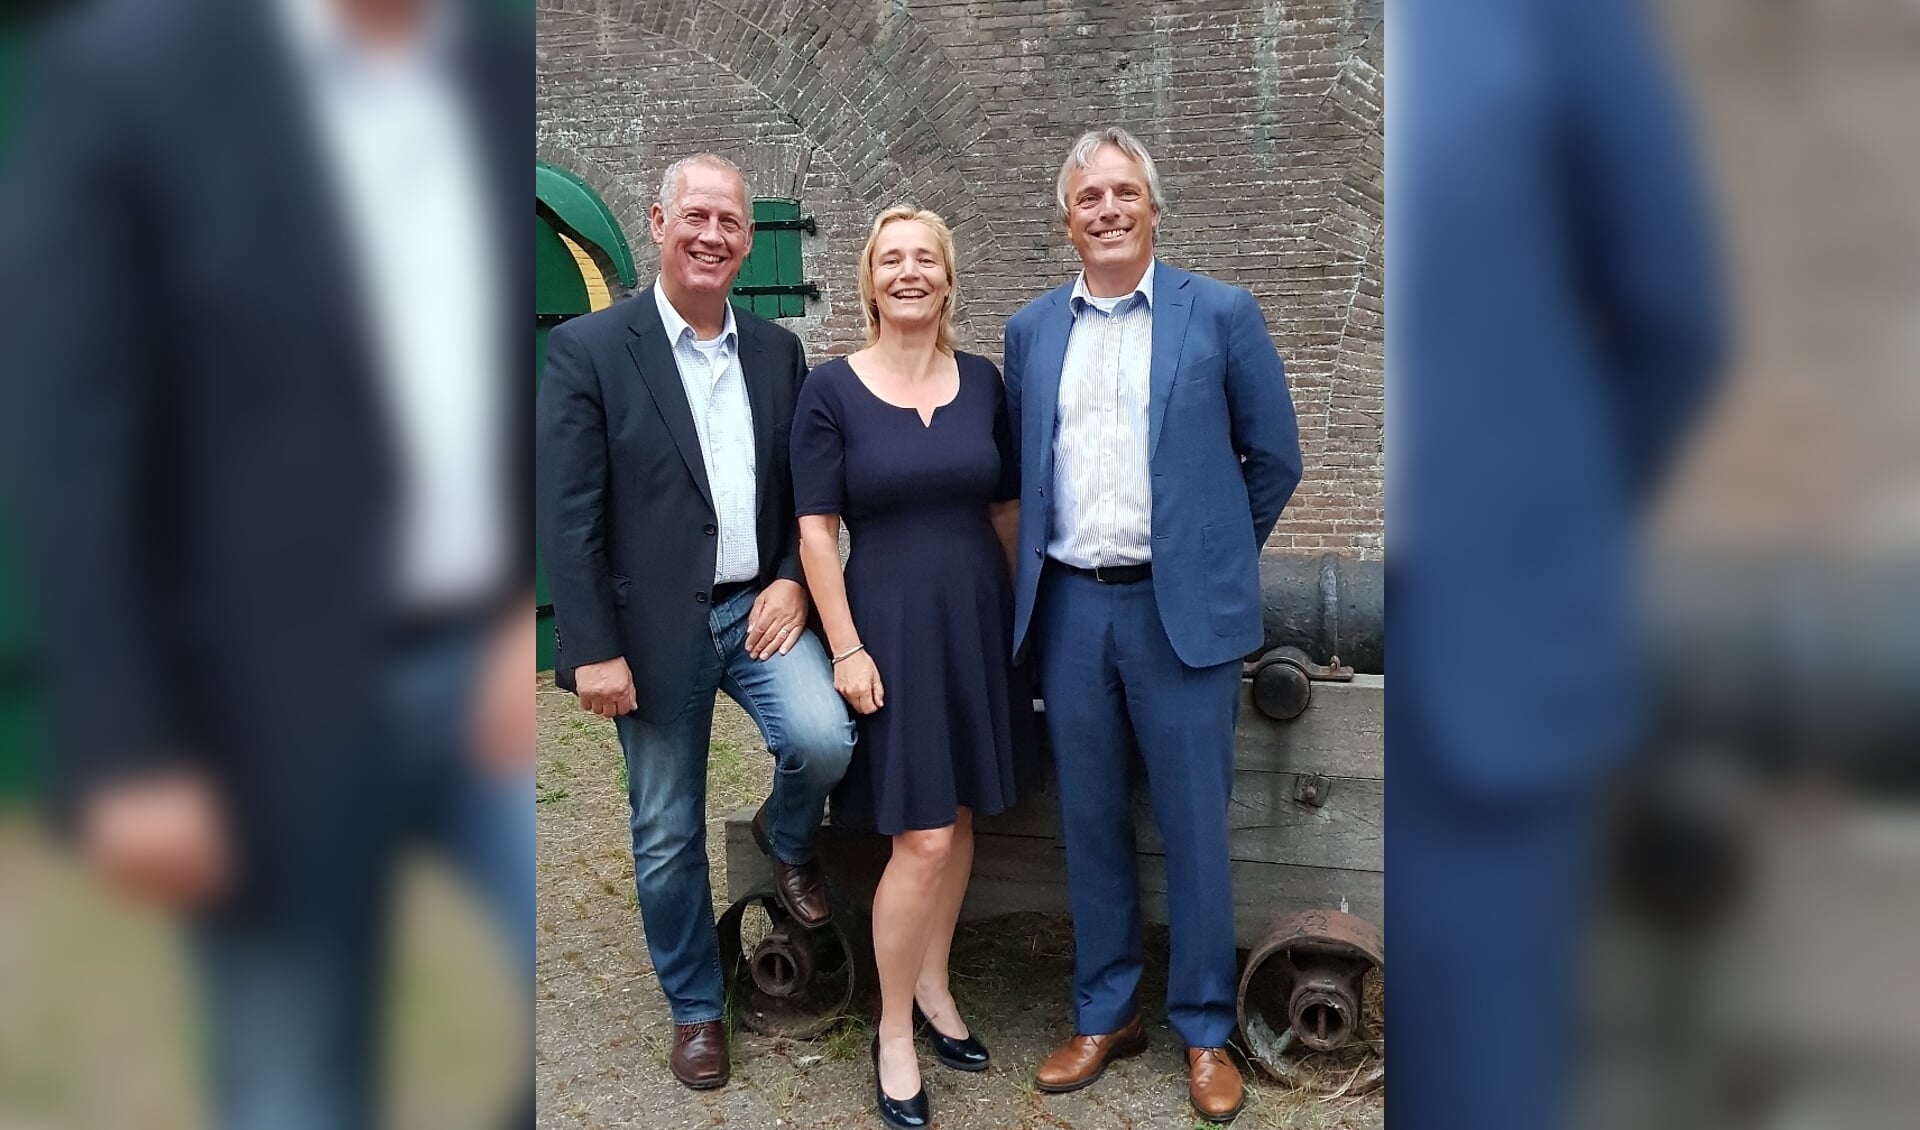 • De top-3 van de VVD, v.l.n.r. André van der Leest, Hanneke van der Leun en Huib Zevenhuizen